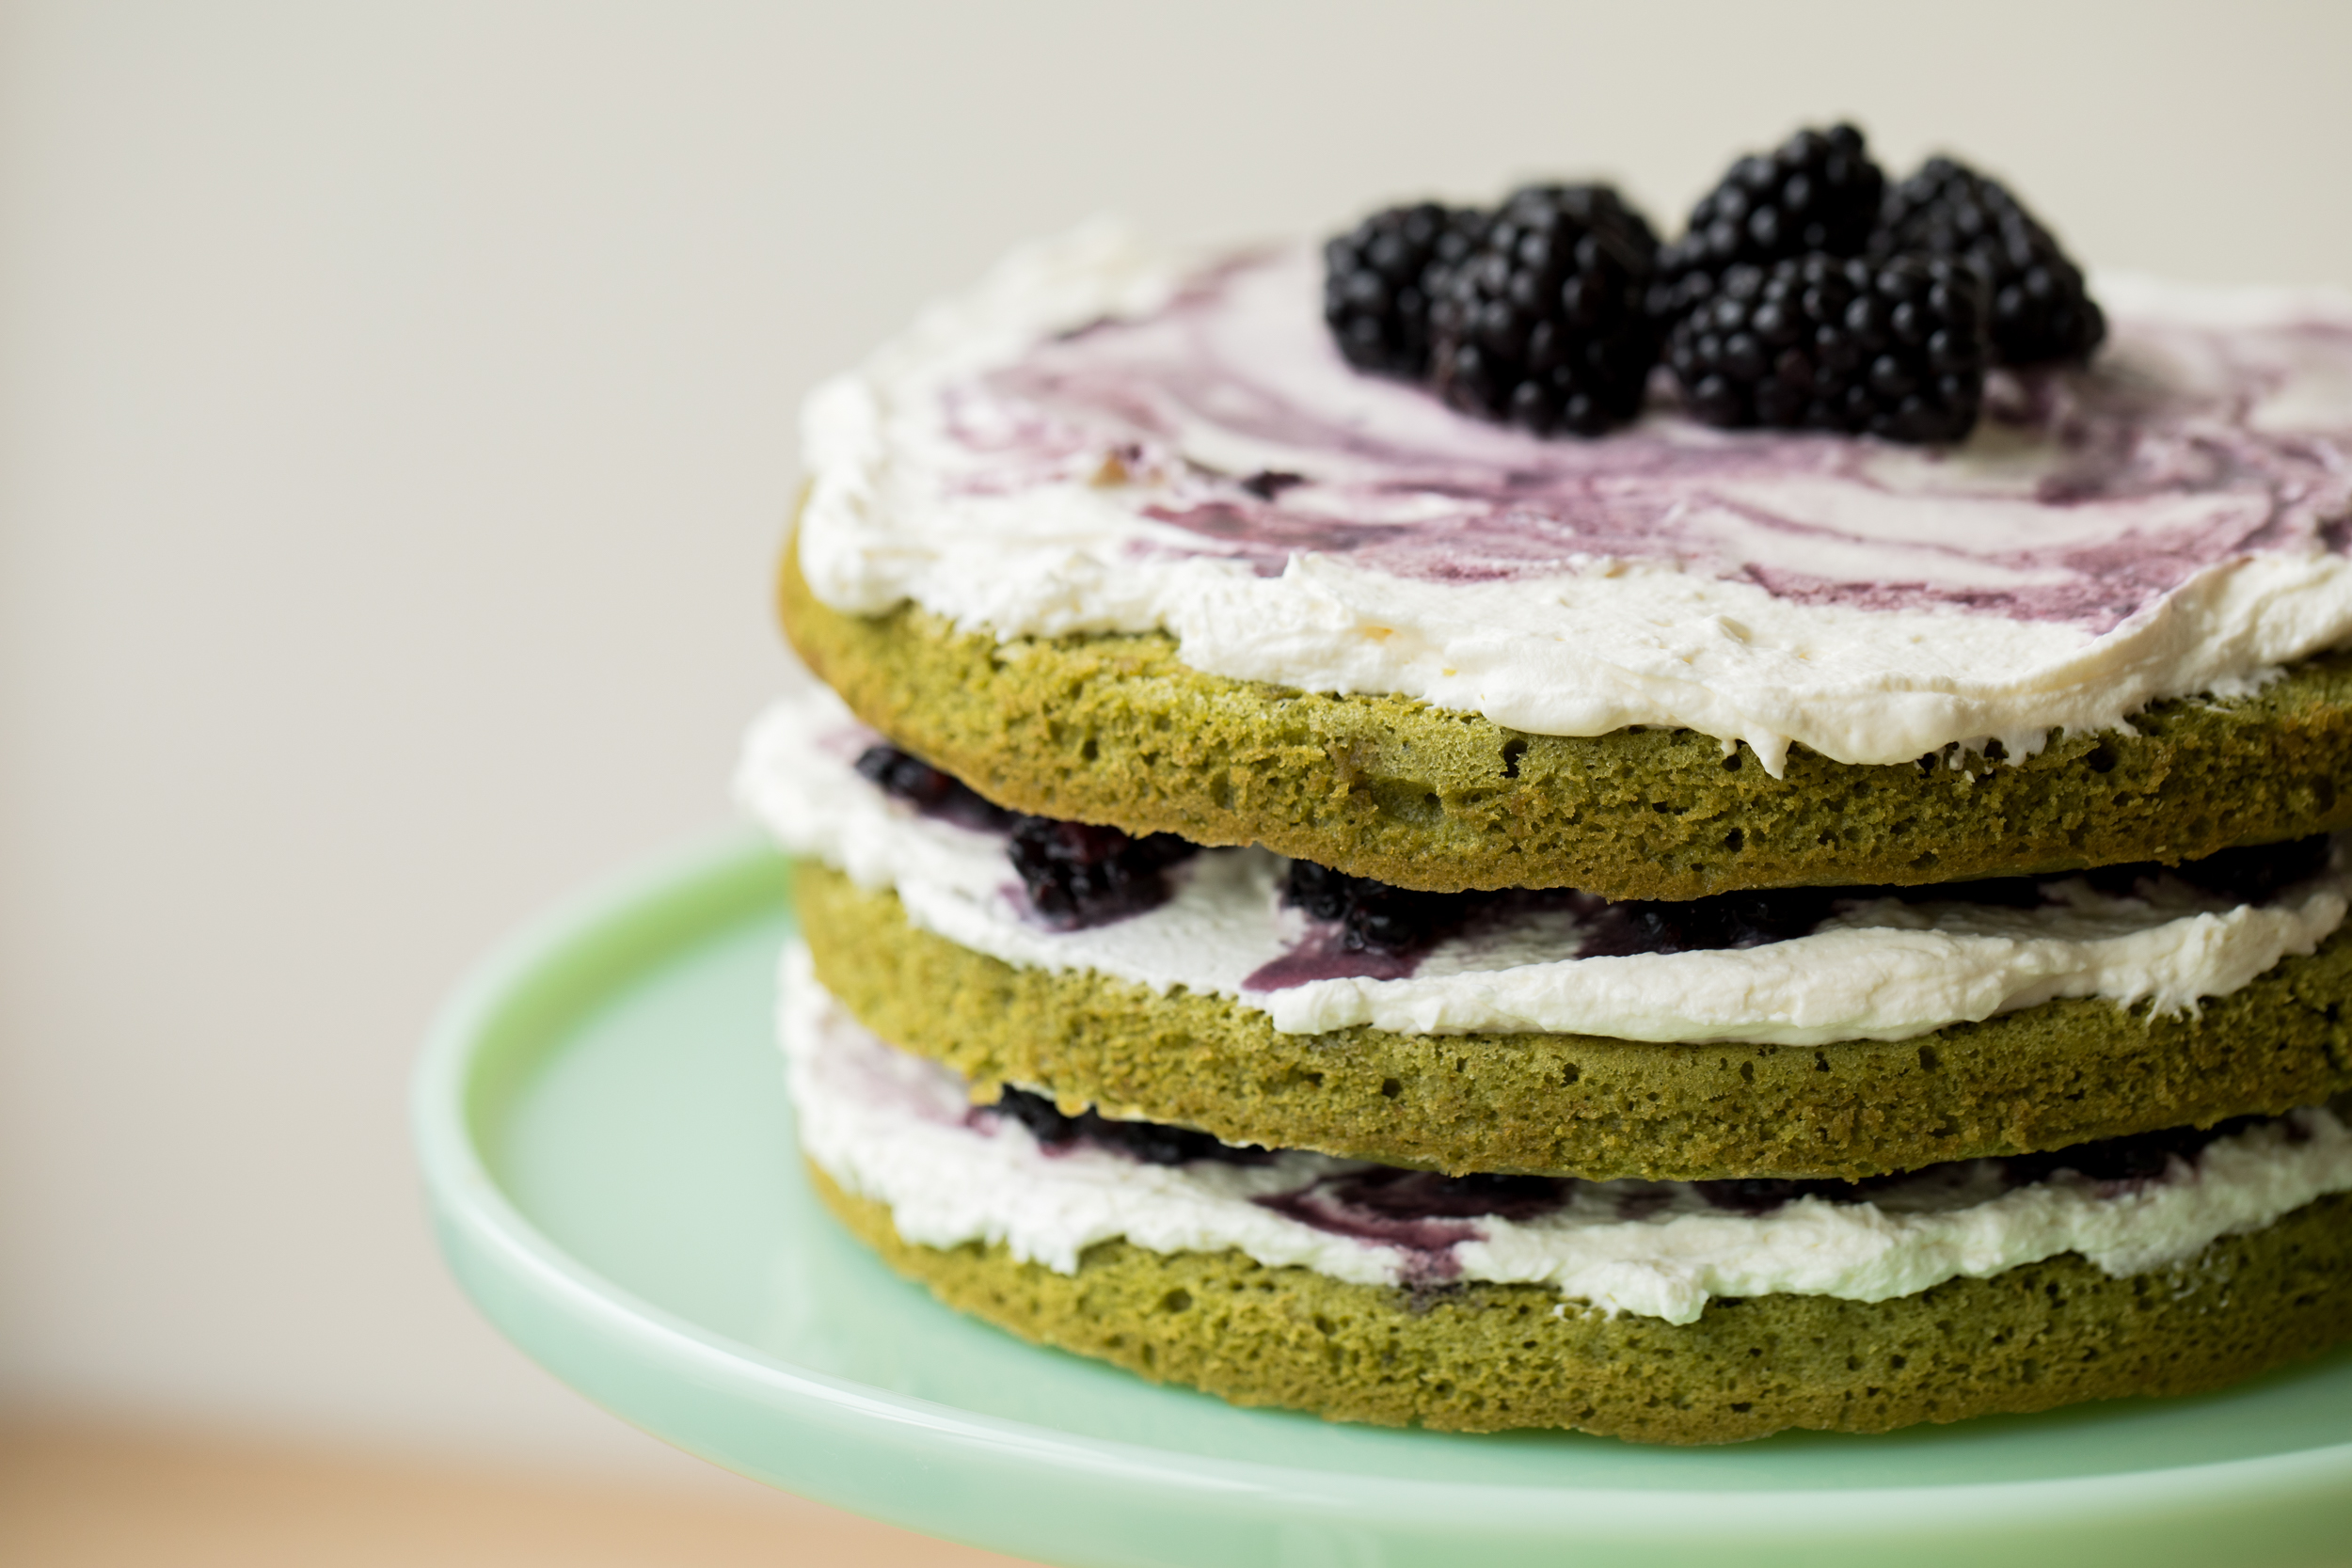 这是抹茶黑莓层蛋糕的侧面图:绿色的四层中间夹着生奶油和捣碎的黑莓，顶部覆盖着生奶油和整个黑莓。蛋糕放在玉蛋糕架上。